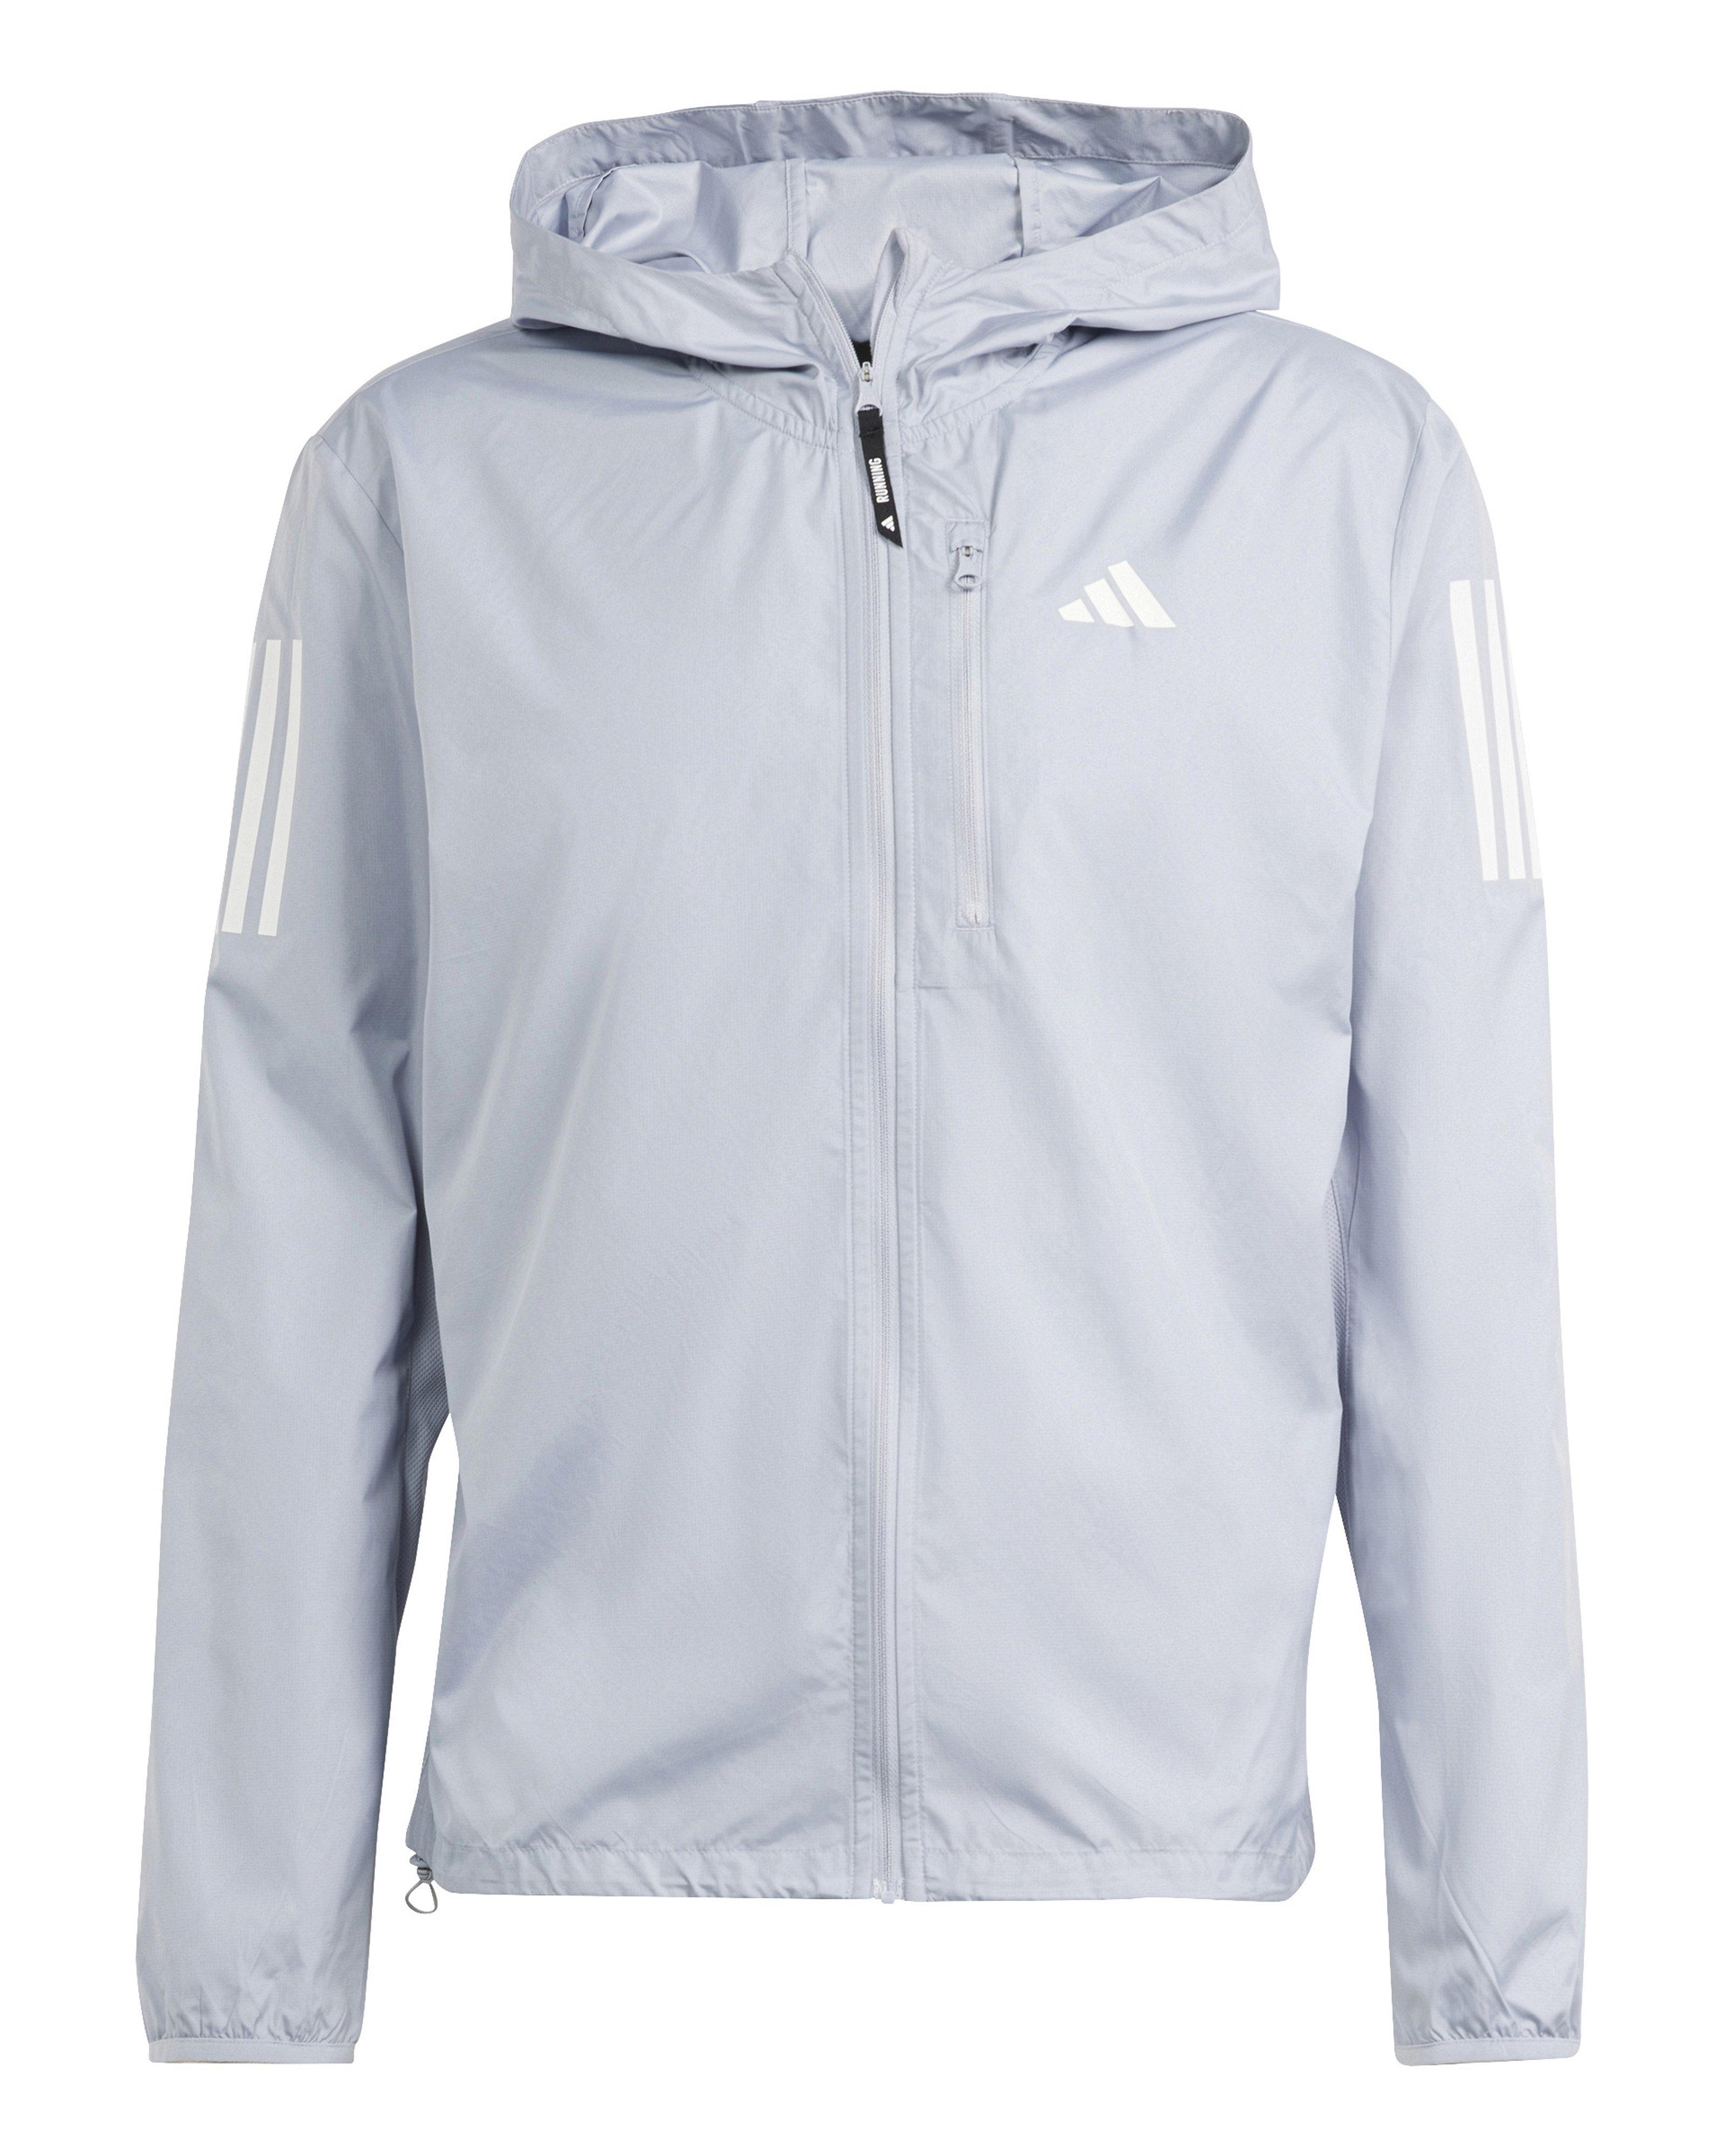 Adidas Men’s OTR B Running Jacket -  Silver